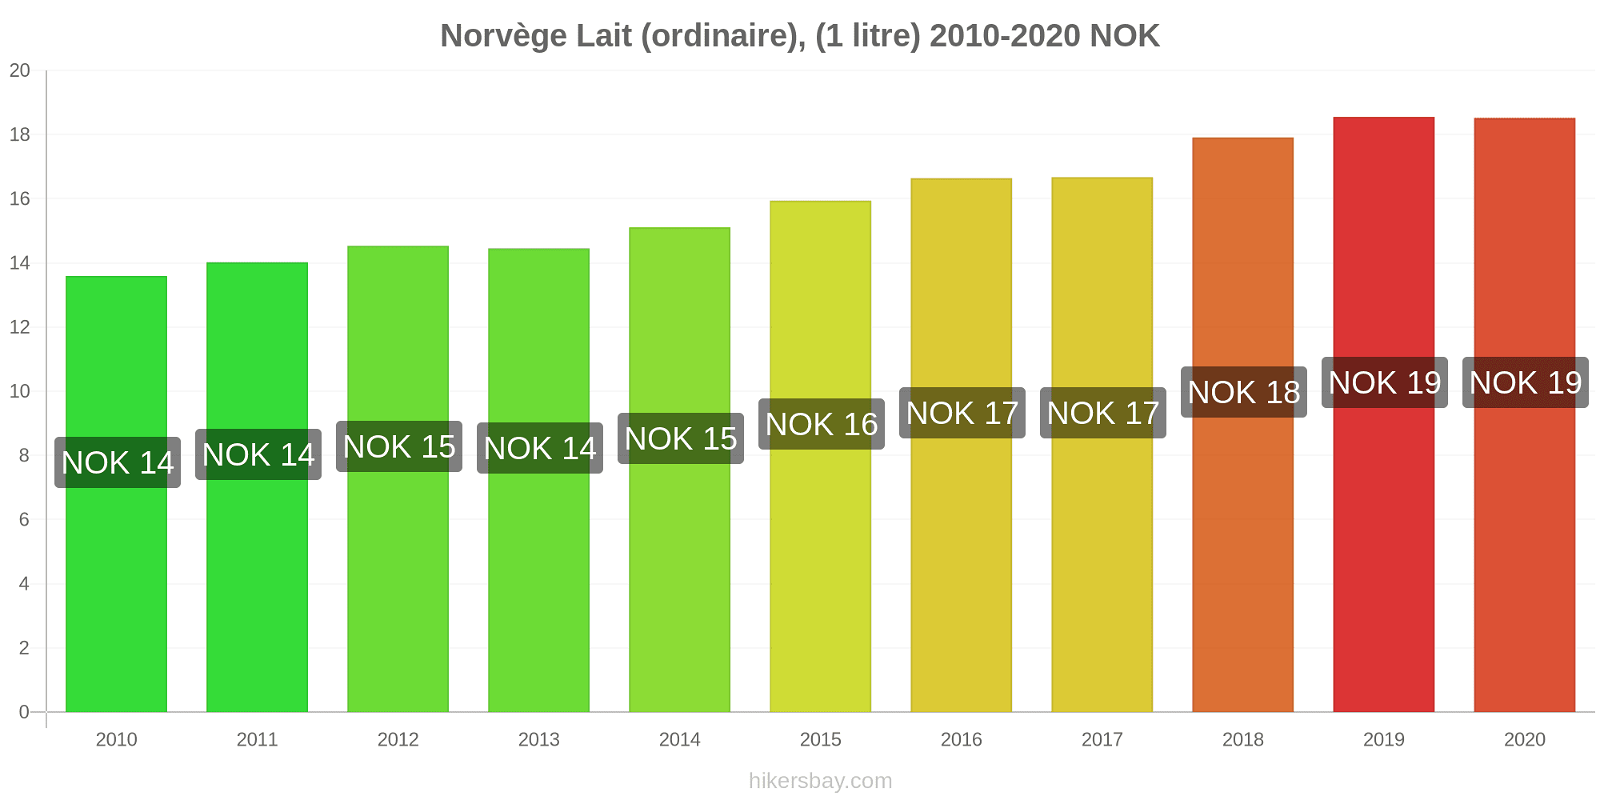 Norvège changements de prix (Régulier), lait (1 litre) hikersbay.com